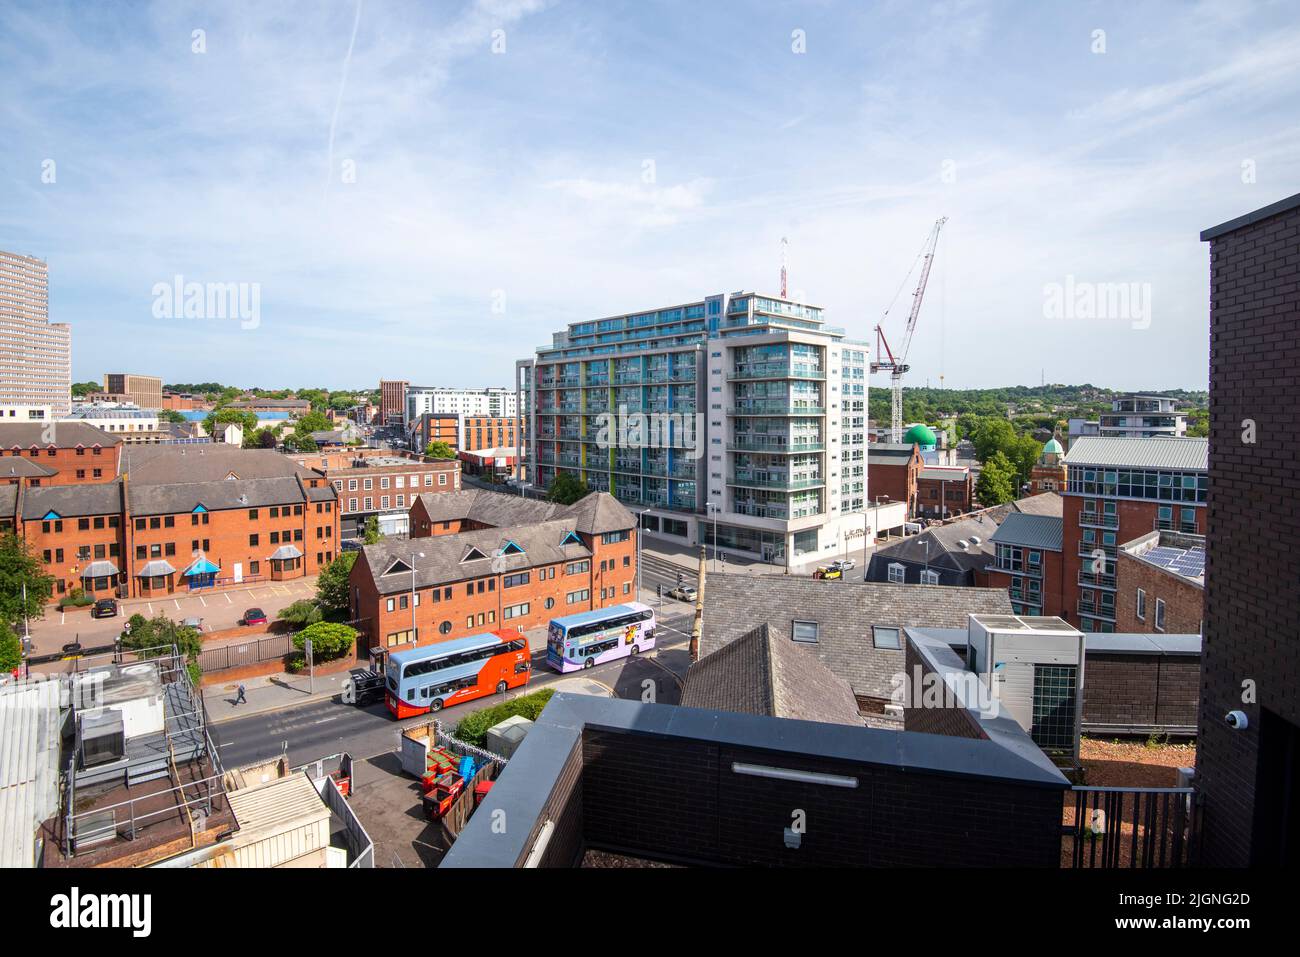 Vista hacia el norte desde el tejado del Instituto Confetti en el centro de Nottingham, Nottinghamshire, Inglaterra, Reino Unido Foto de stock